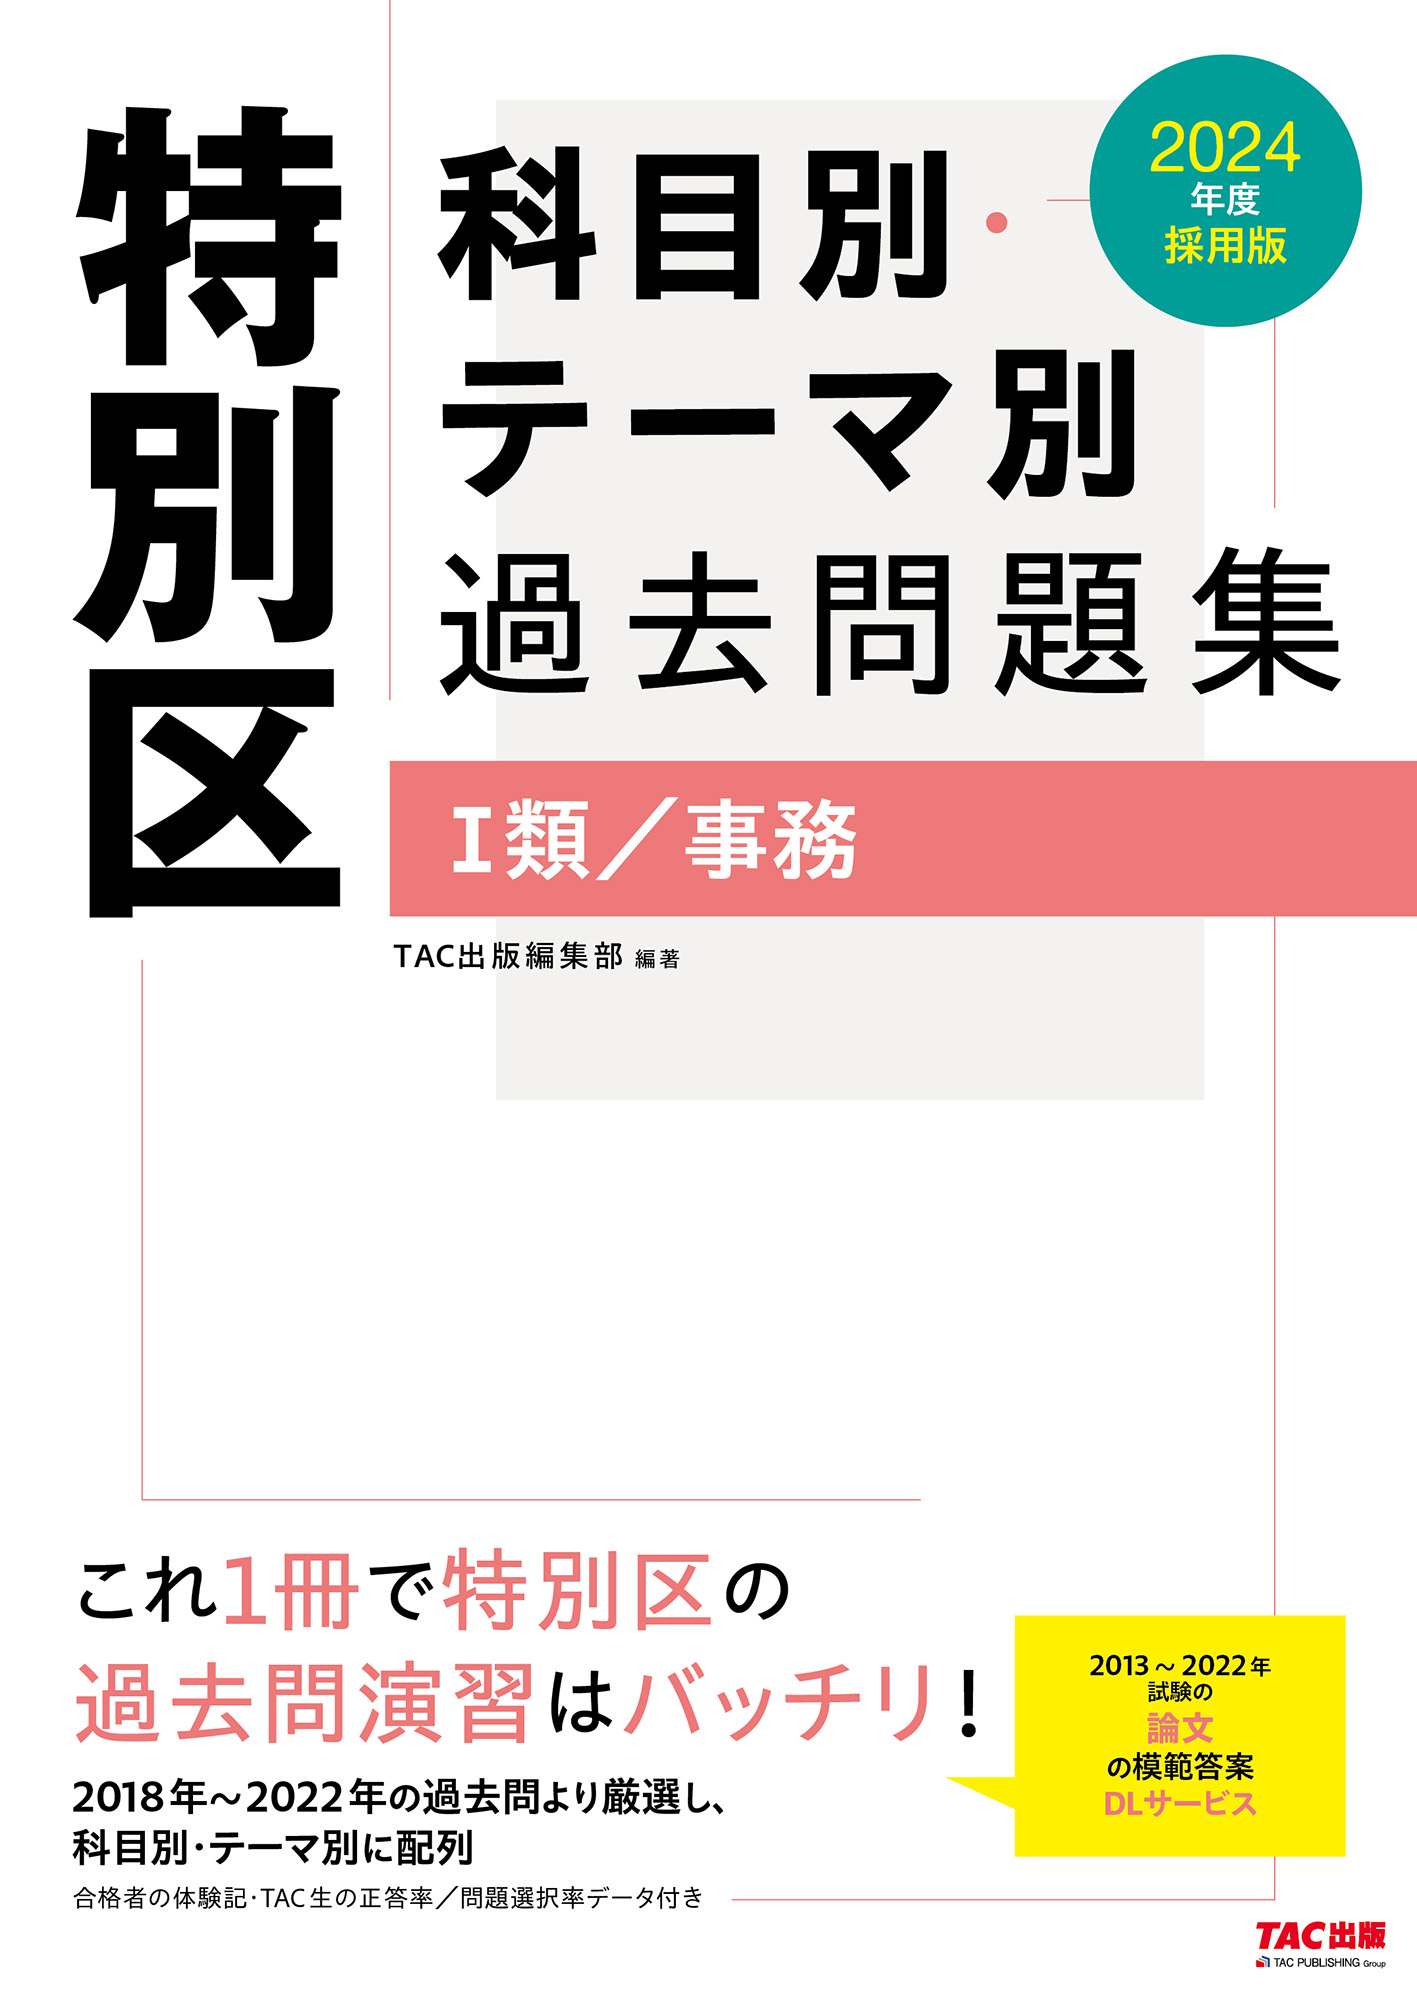 東京都・特別区「1類・2類」採用試験問題集 ’94年度版